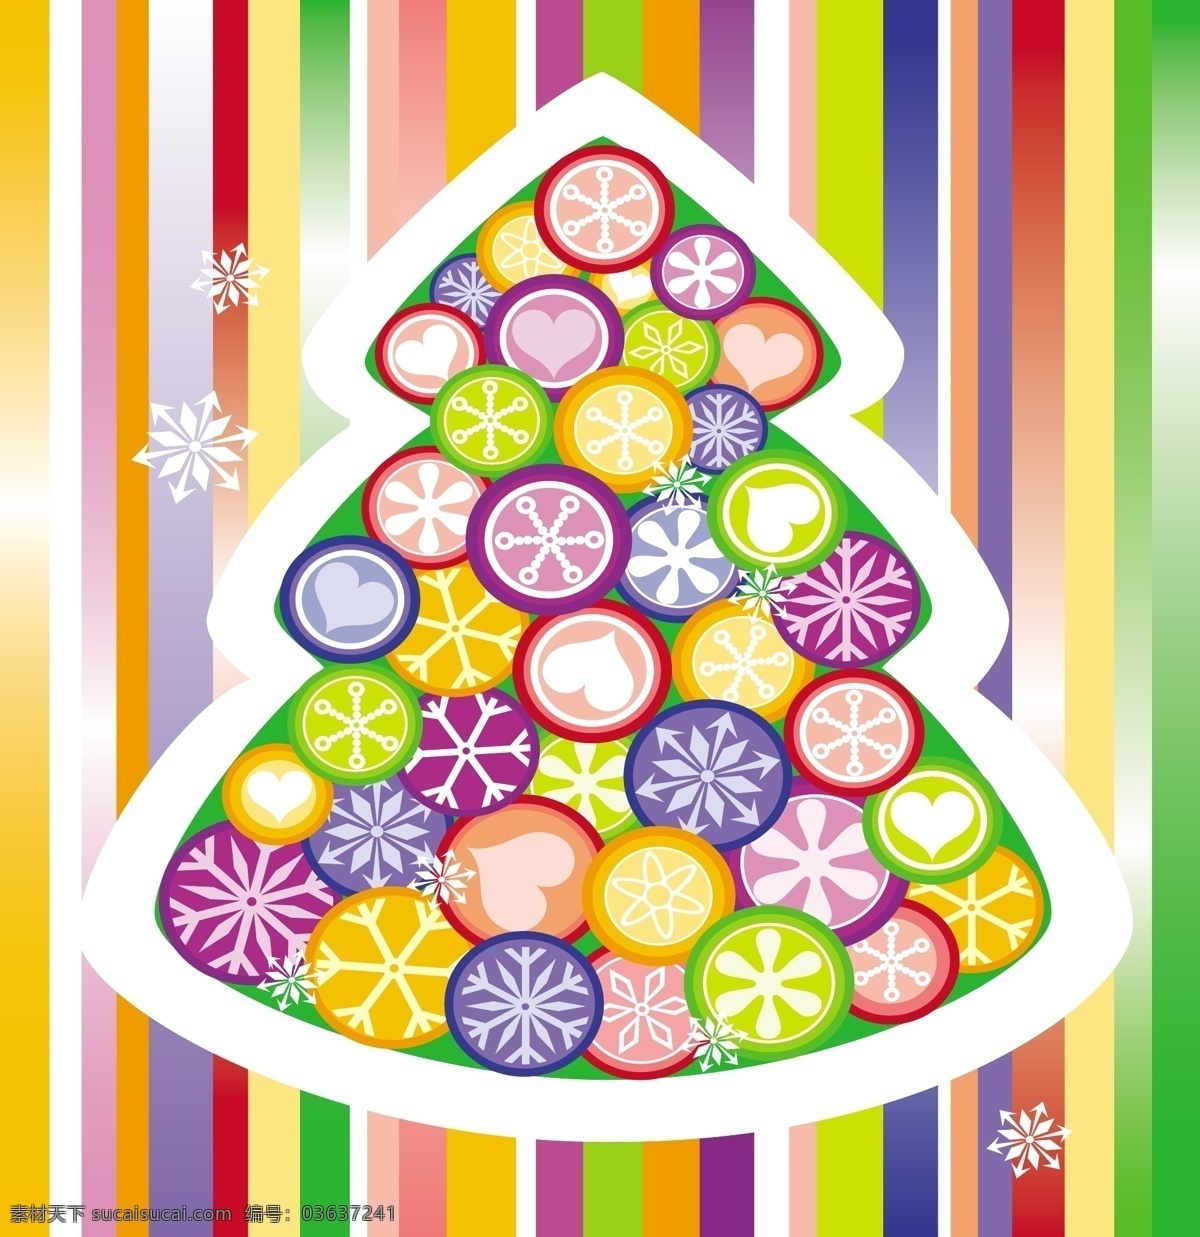 可爱 糖果 颜色 圣诞树 eps格式 七彩 矢量素材 条纹 童真 糖果颜色 波板糖 矢量图 其他矢量图